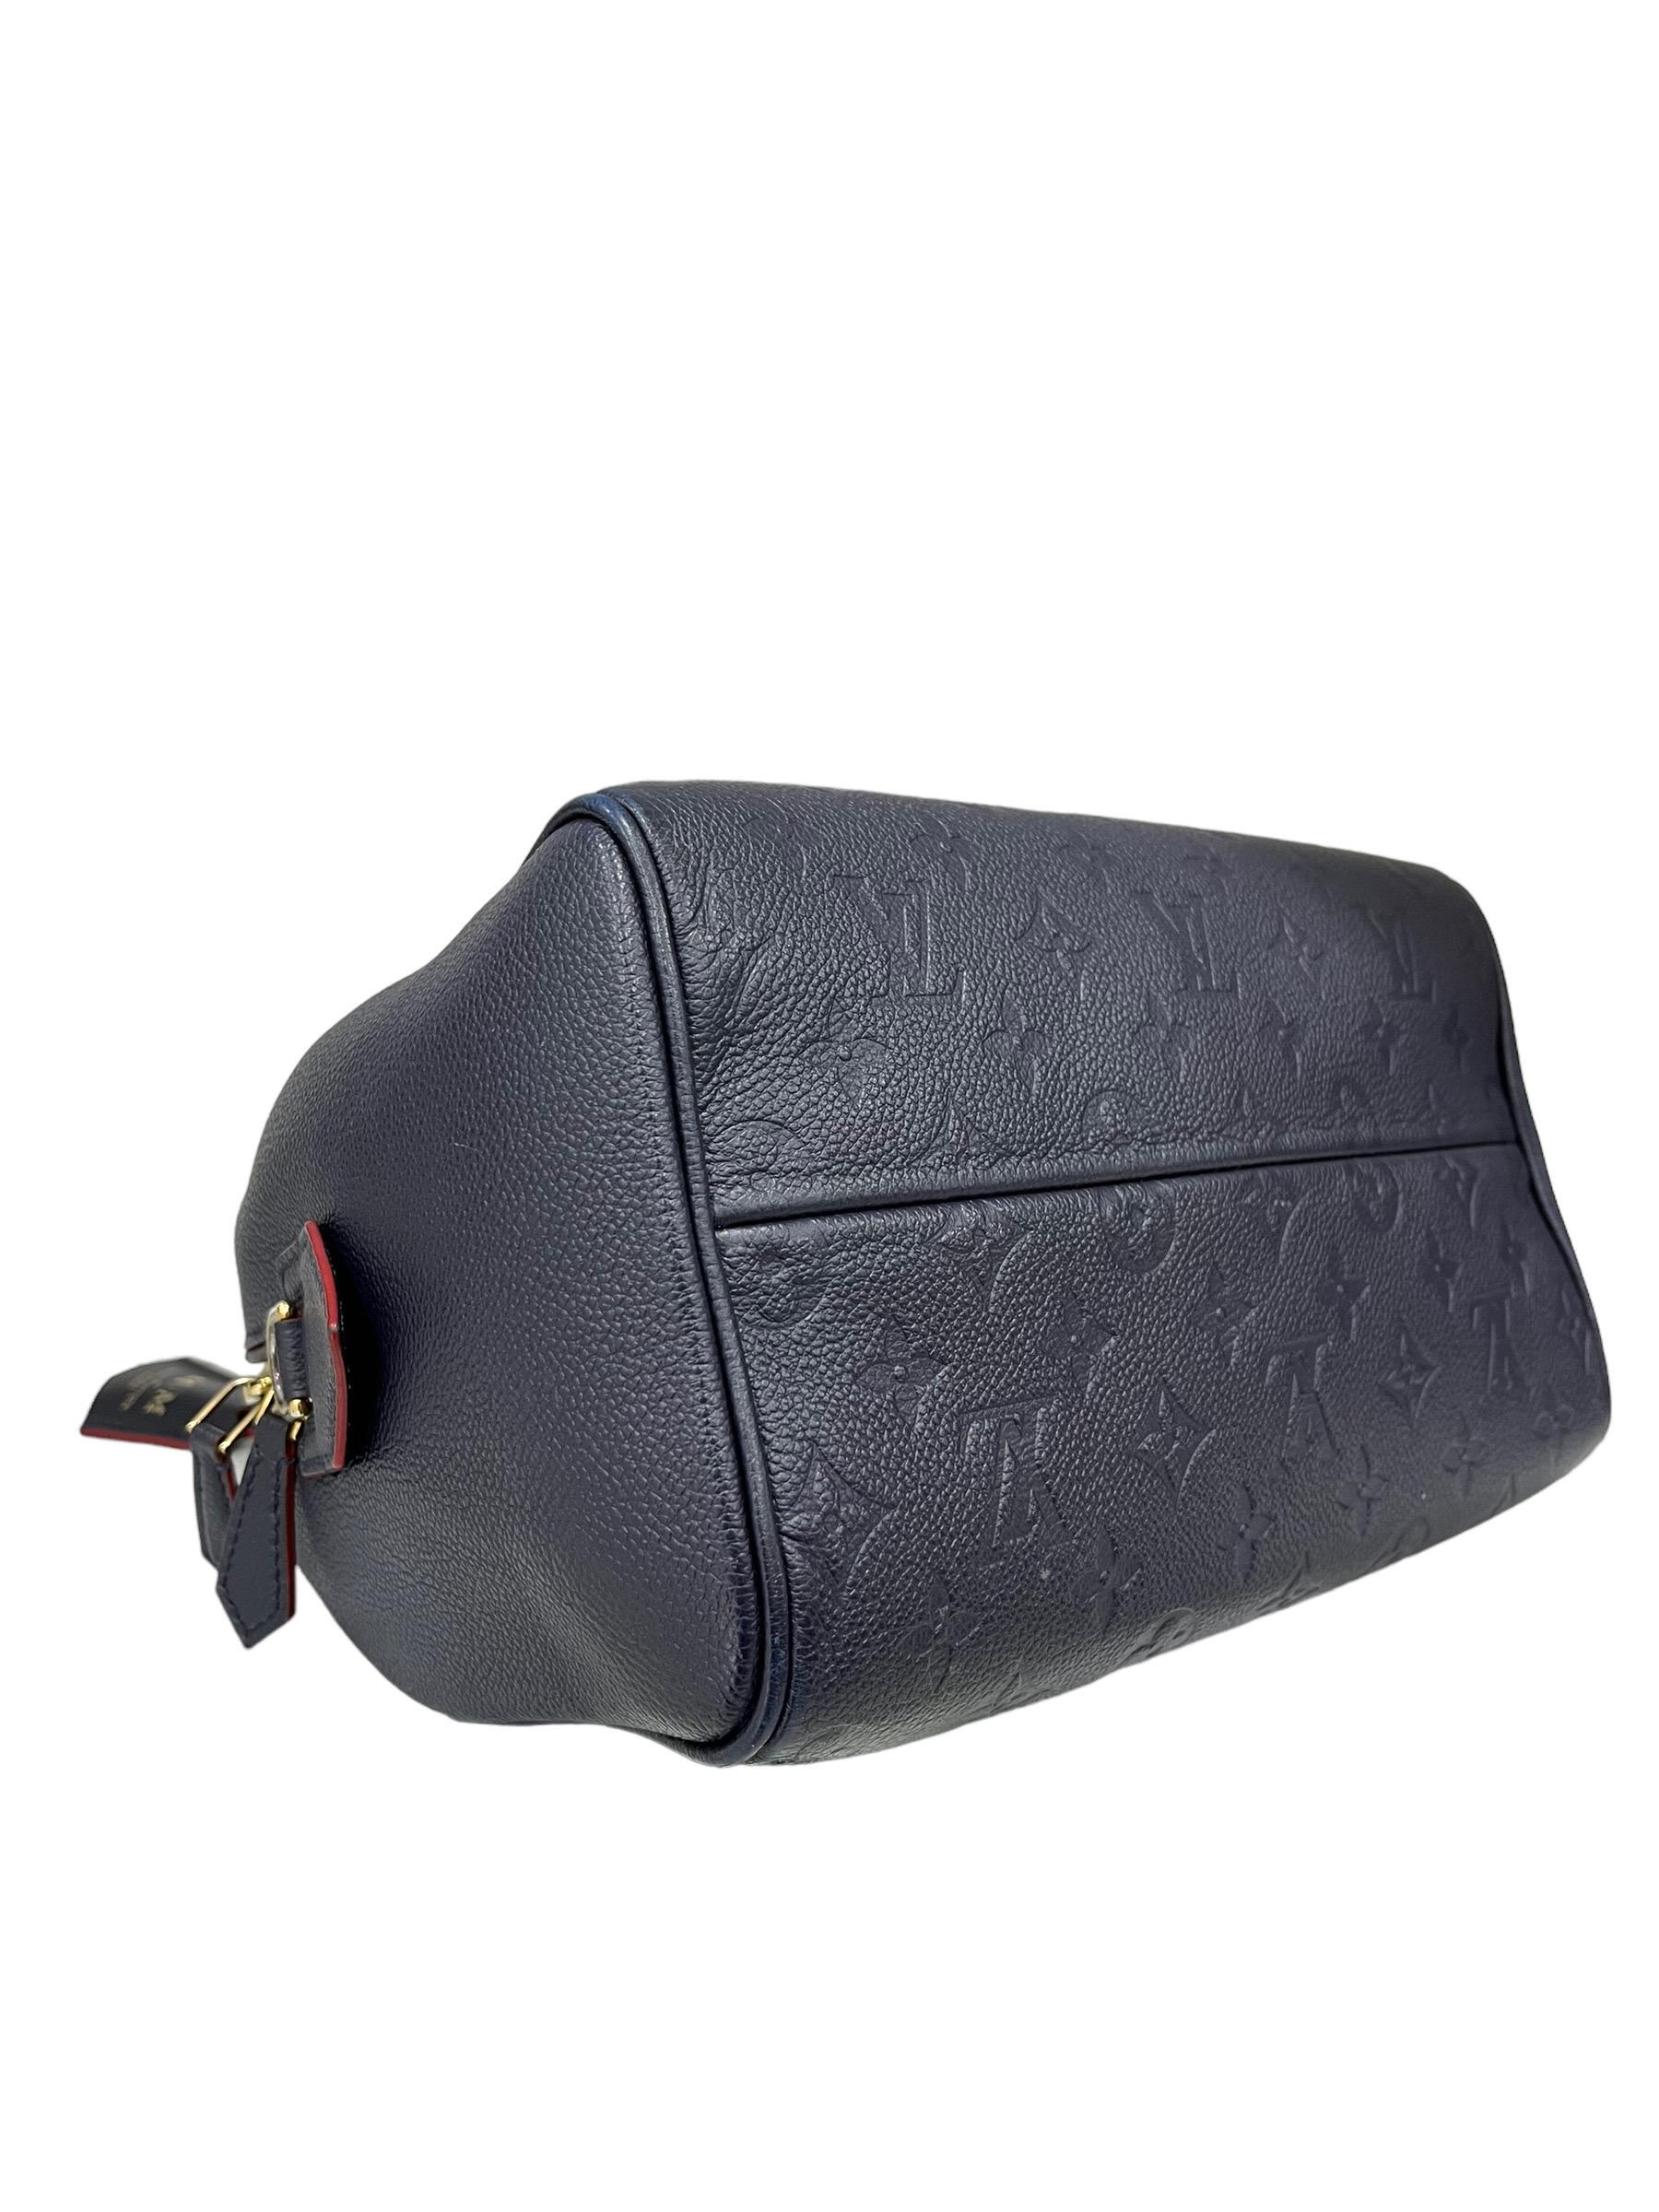 Women's Louis Vuitton Speedy 25 Bandoulière Empreinte Blue Leather Top Handle Bag